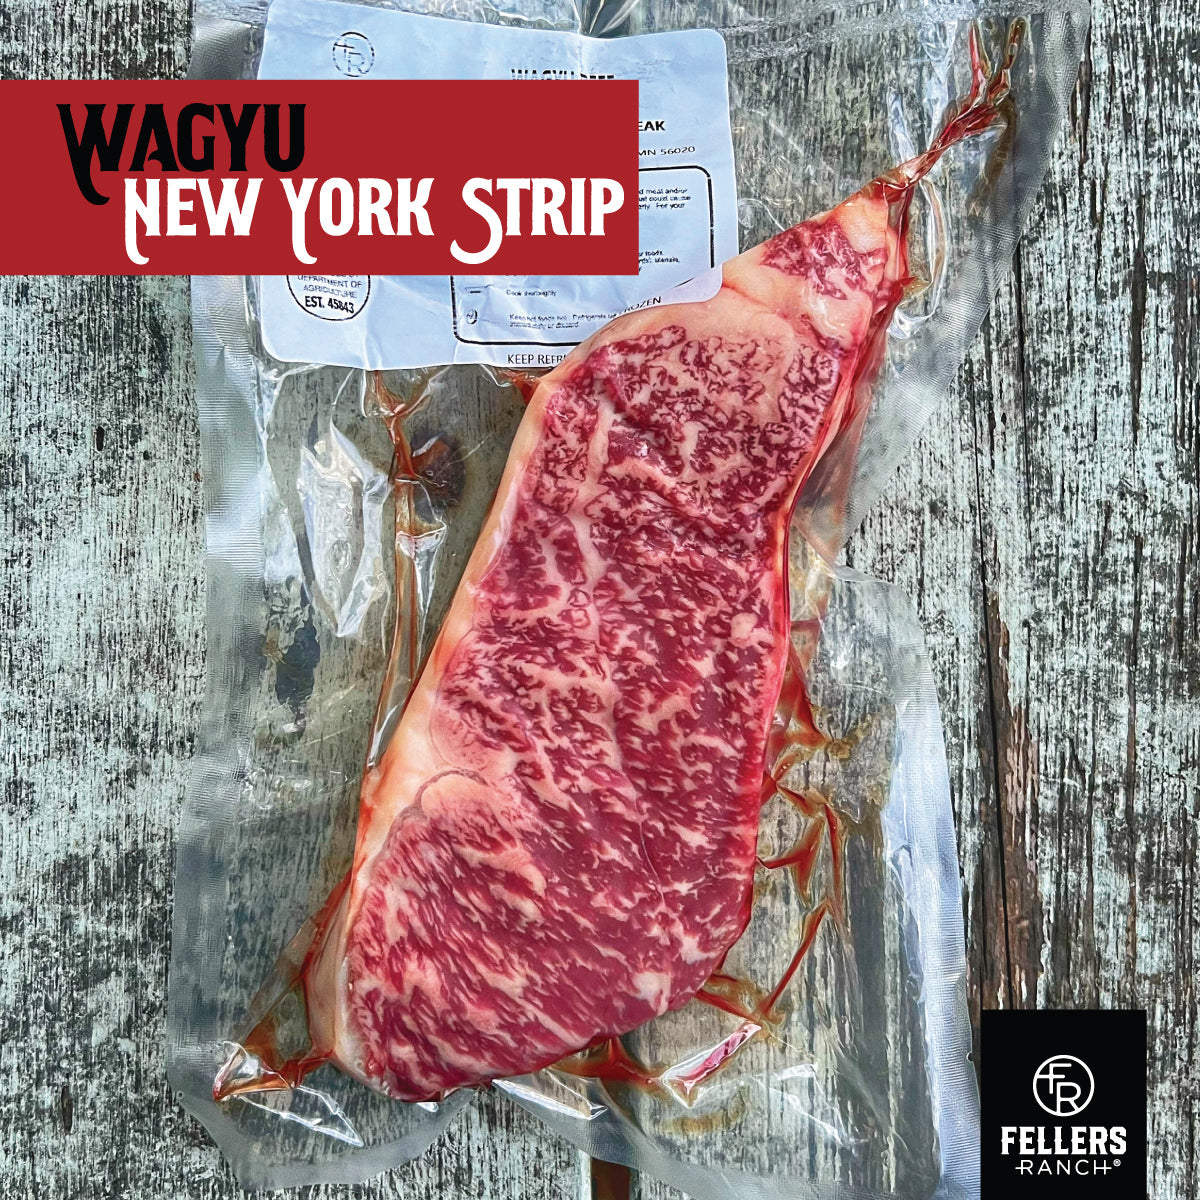 2 Wagyu Strip Steak 16 oz each